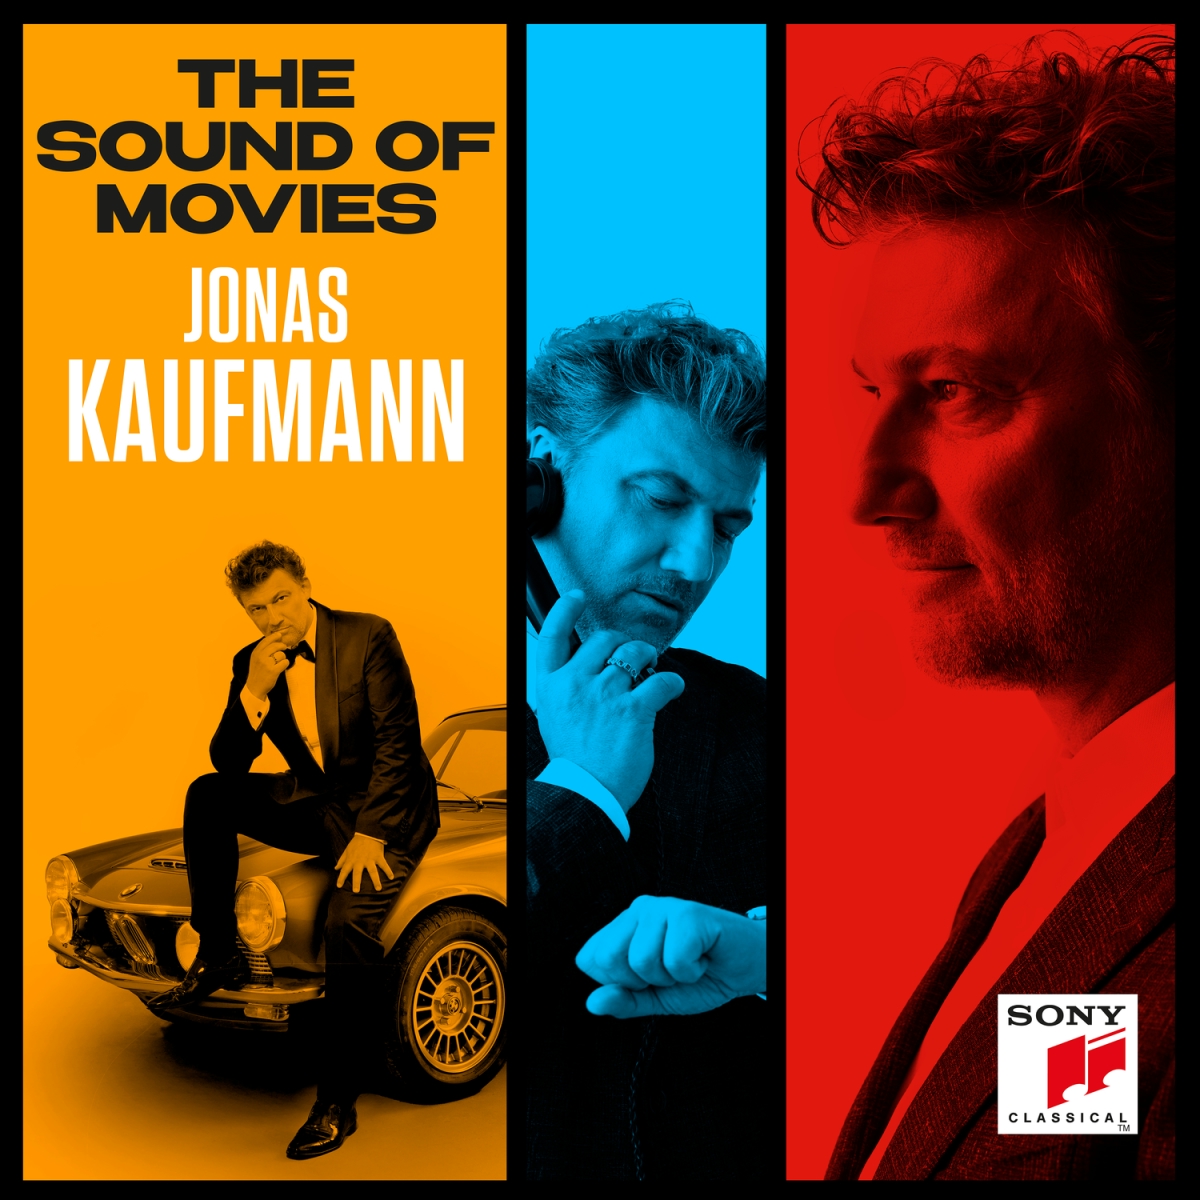 jonas kaufman the sound of movies